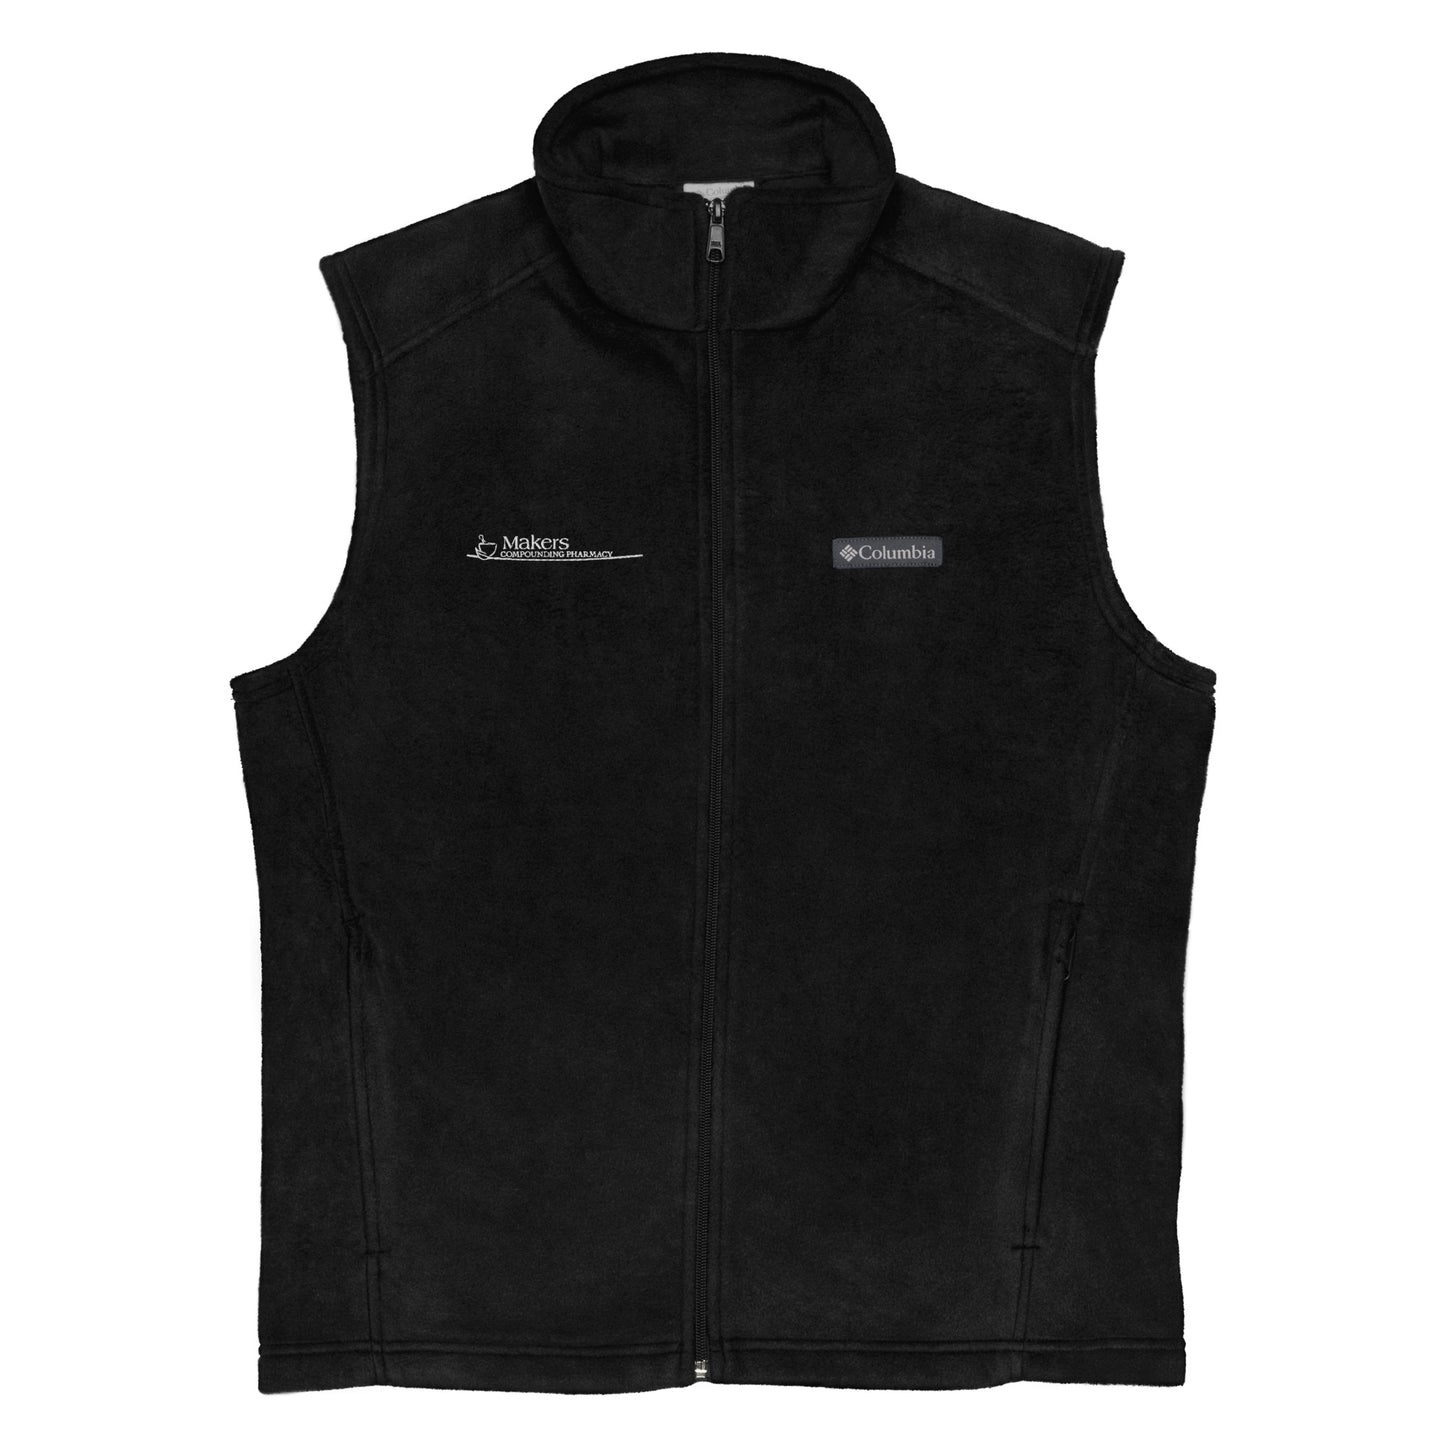 Columbia | Men’s fleece vest - Makers